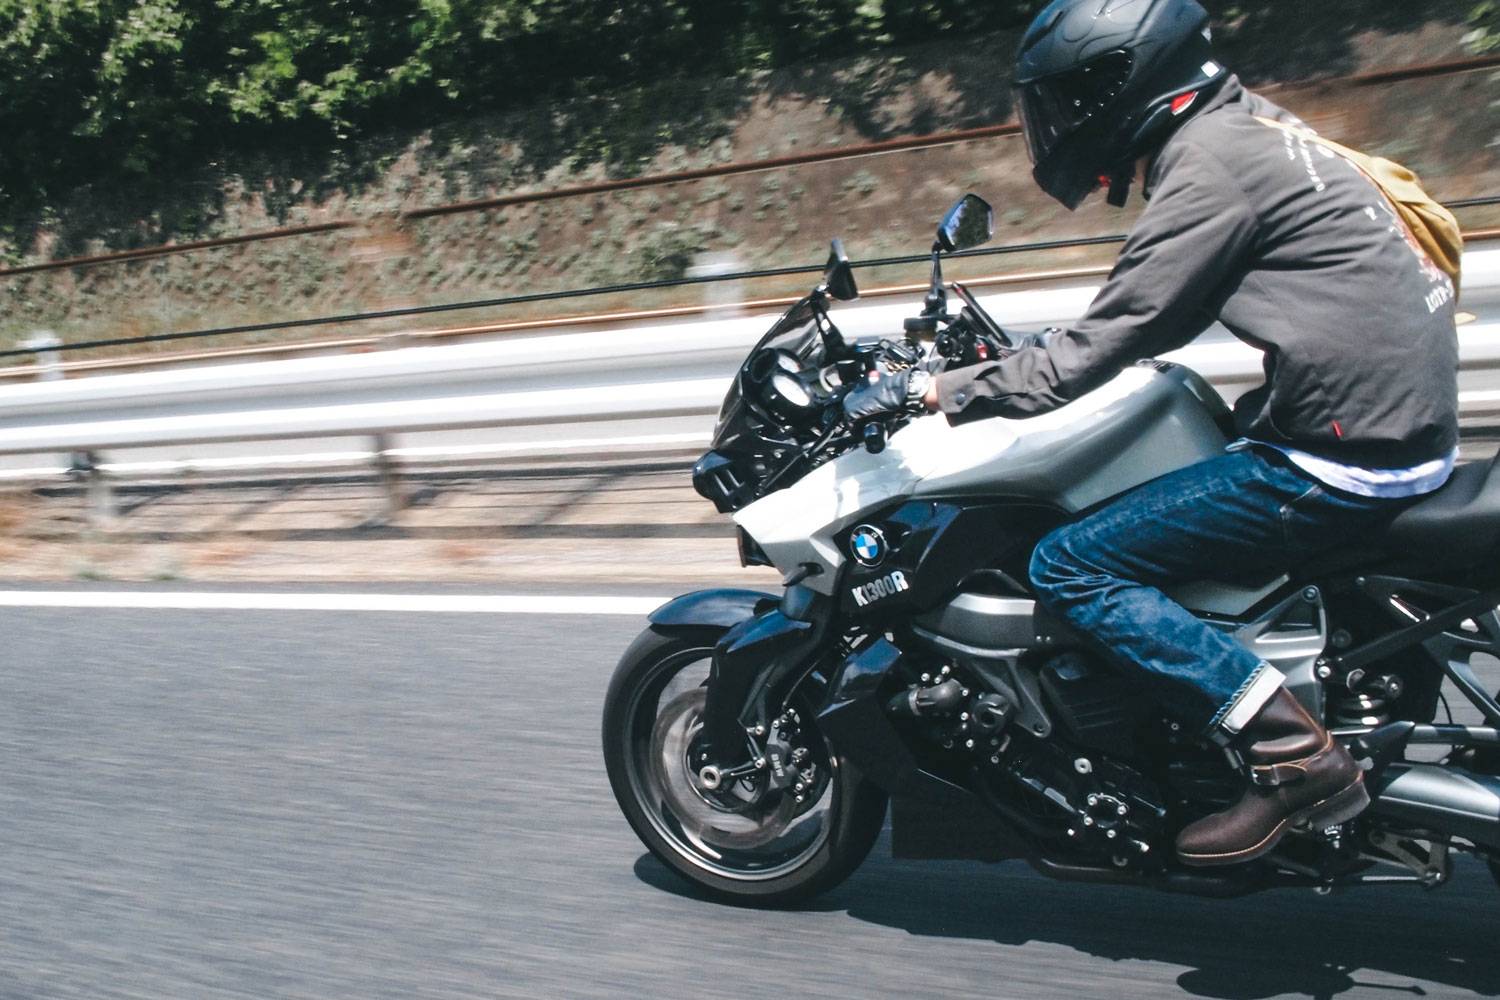 活動報告 GS1200SS K1300R ツーリング モーターサイクル バイク ダム touring motorcycle bike